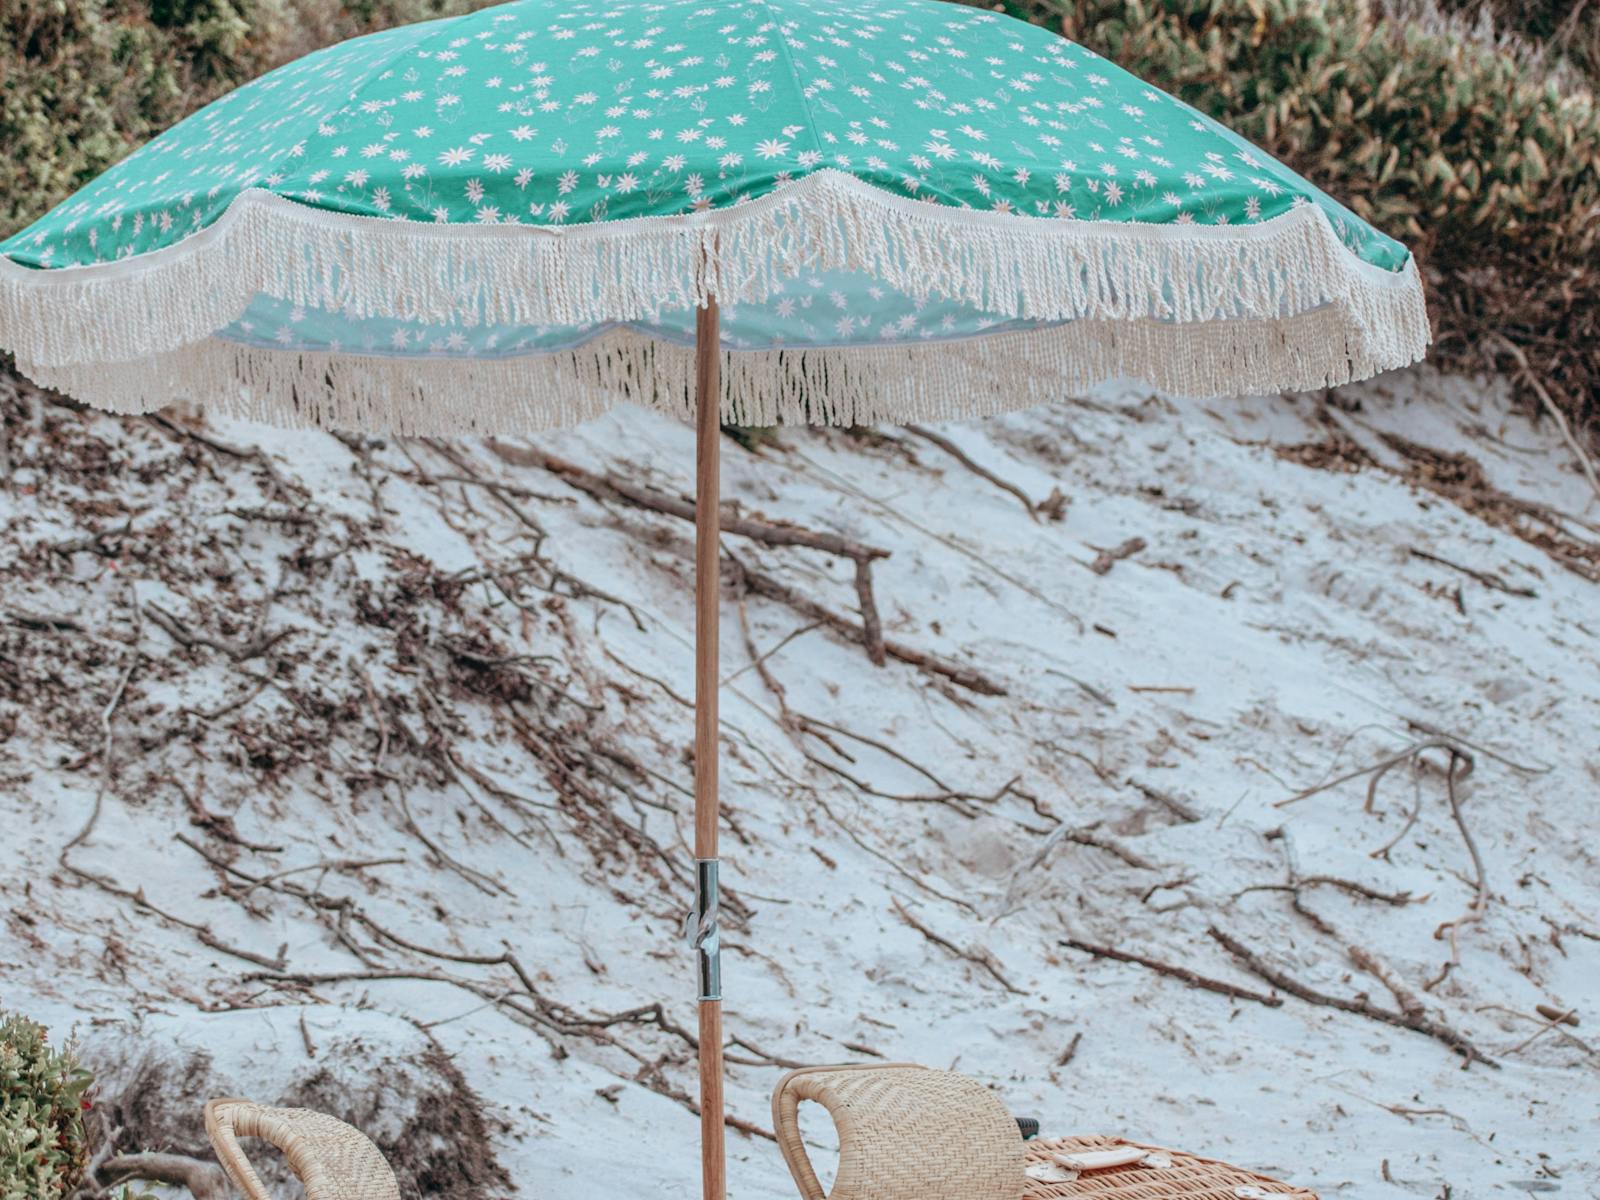 Aqua beach umbrella is set up above a beach picnic on a white sandy Tasmanian beach